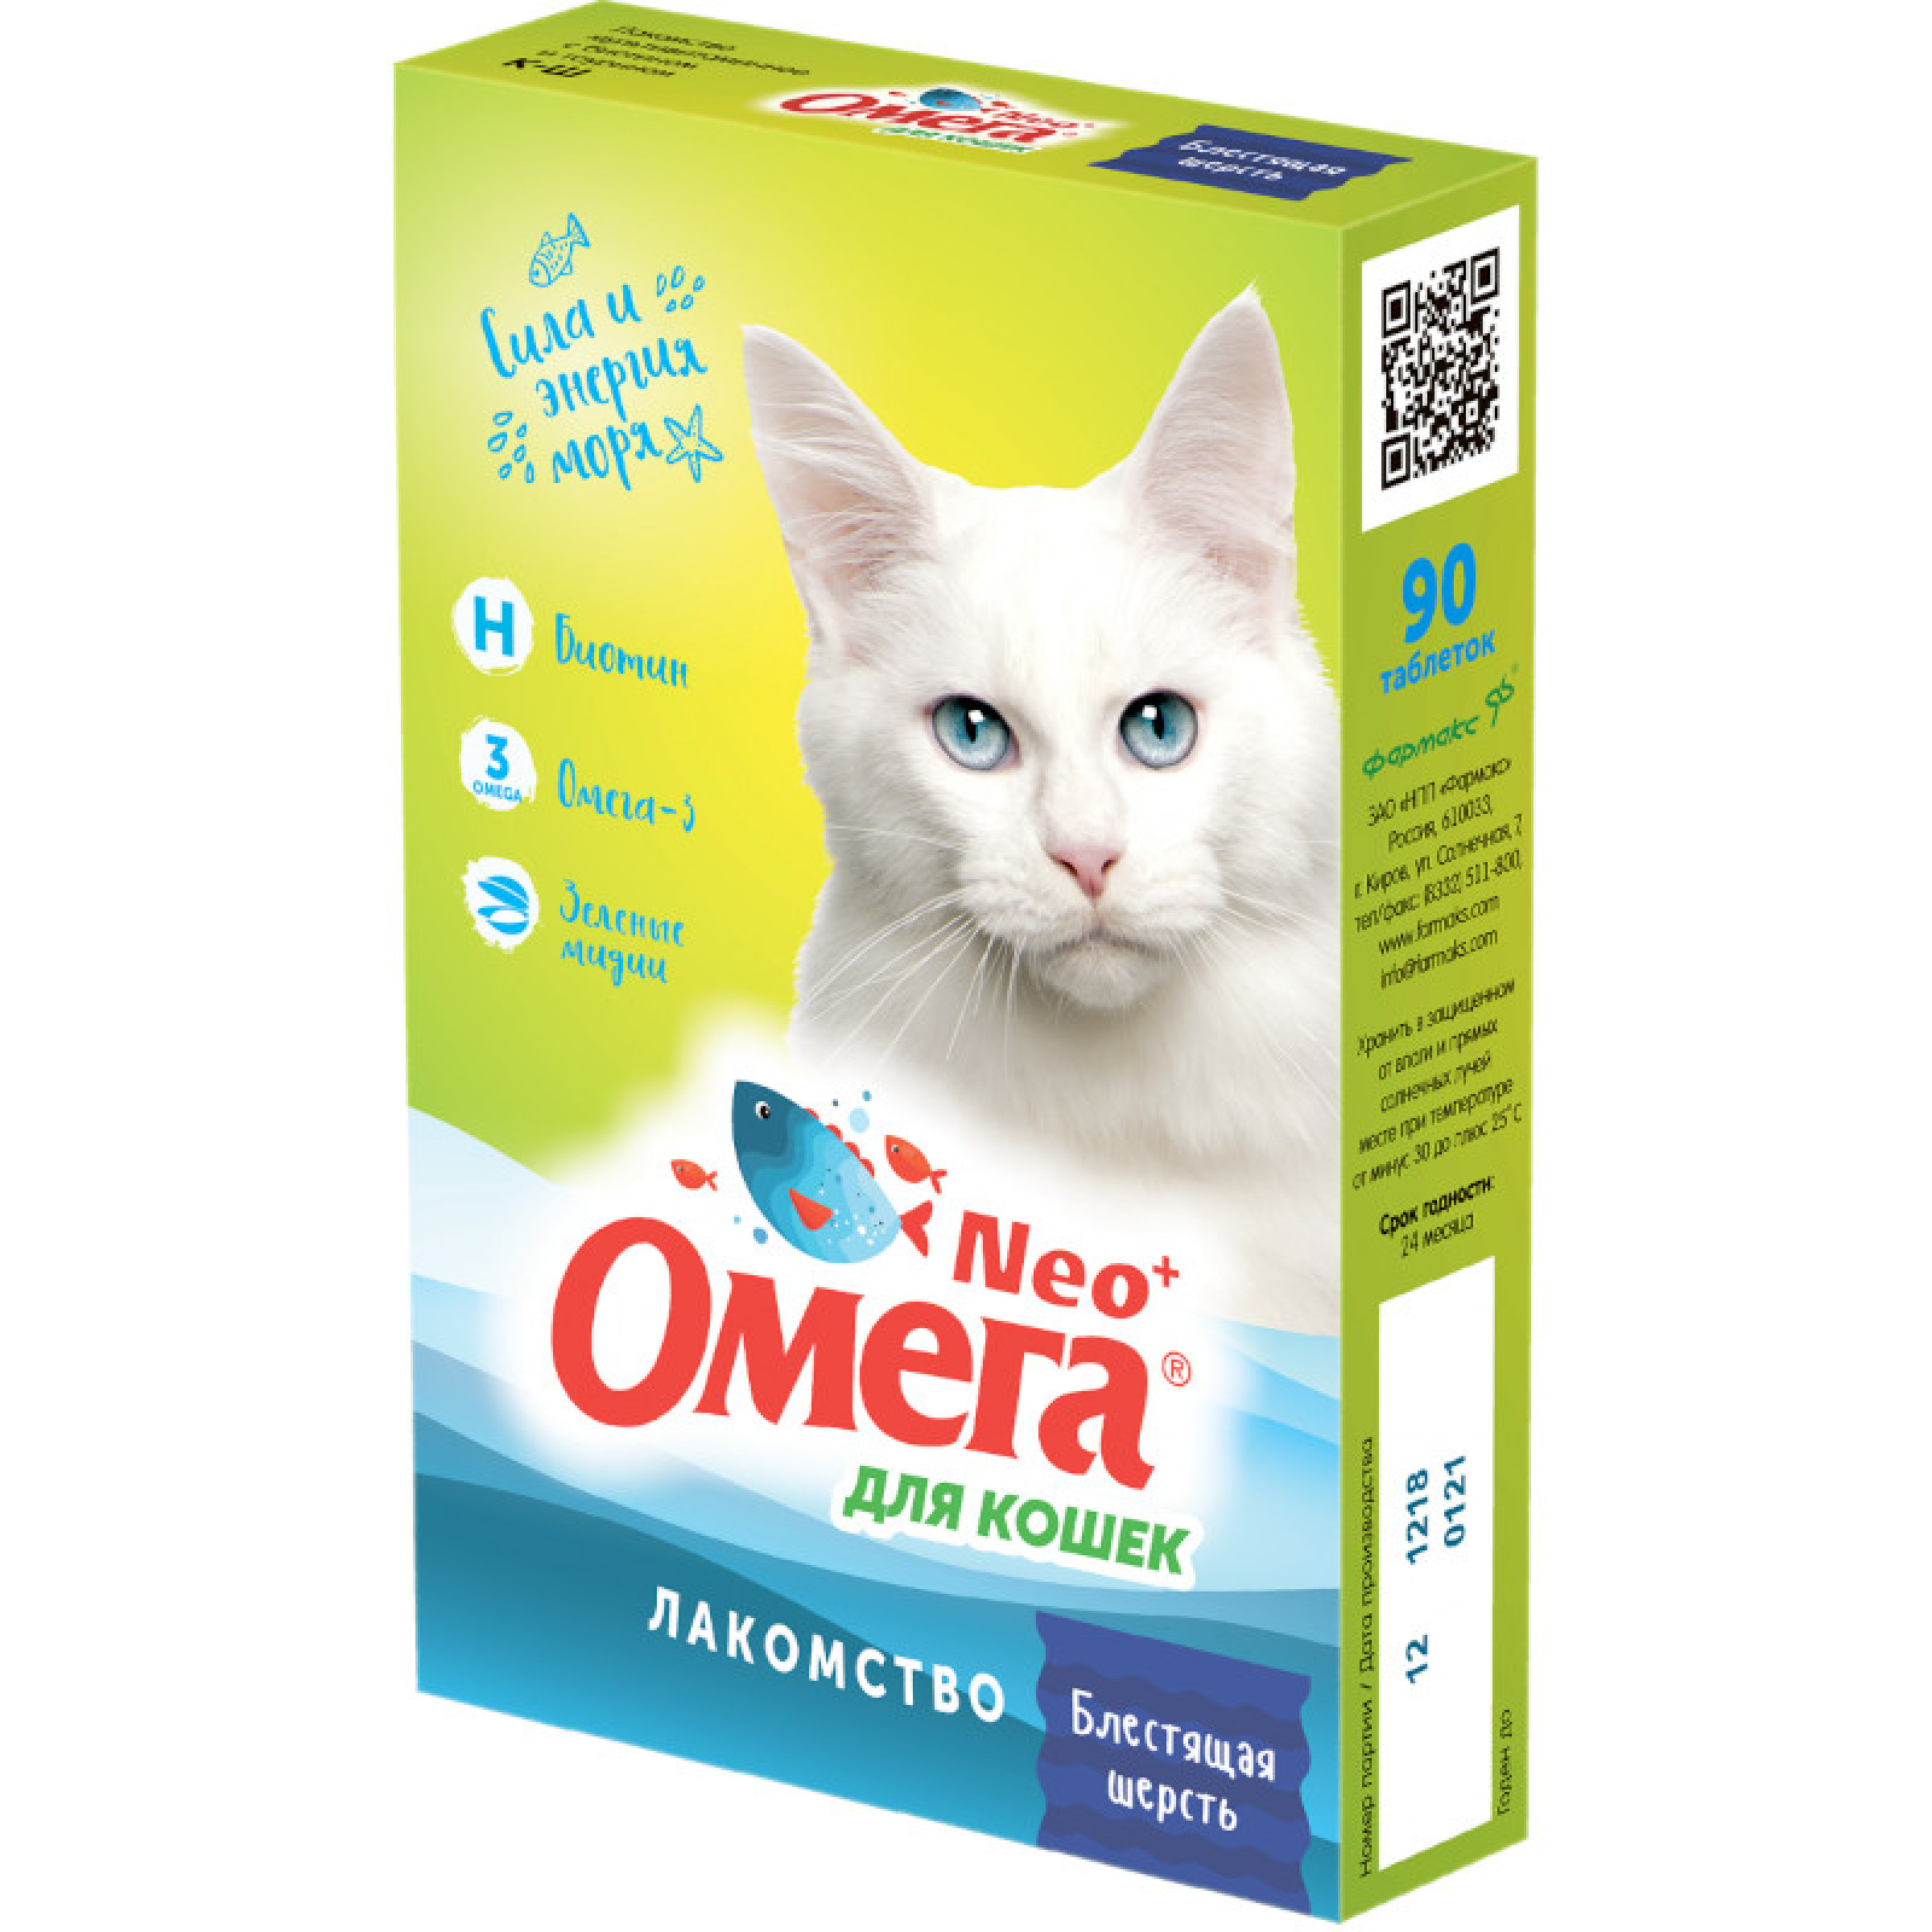 Витаминизированное лакомство Омега Neo+ Блестящая шерсть для кошек, 90 таблеток